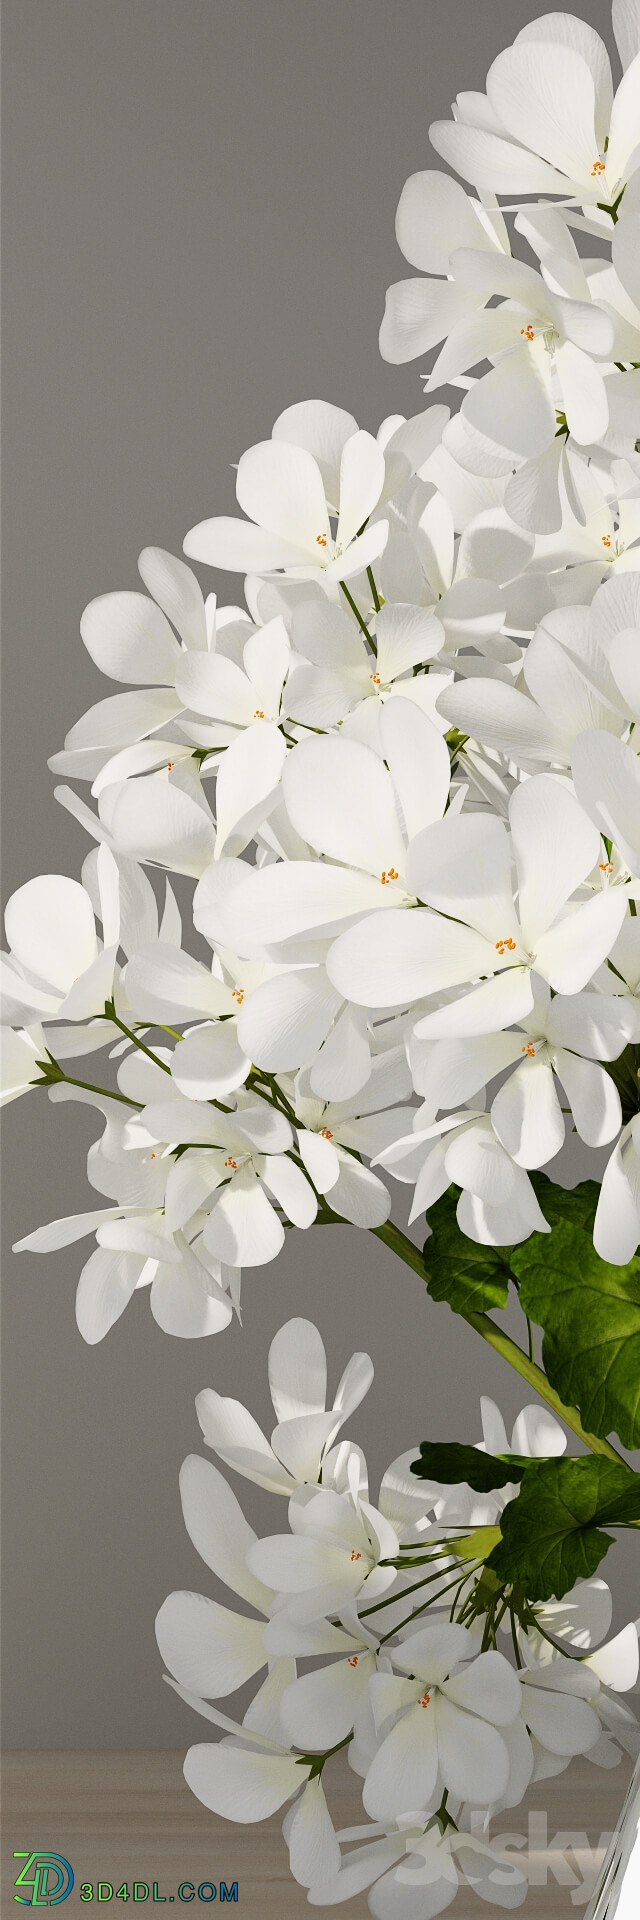 Plant - Geranium bouquet